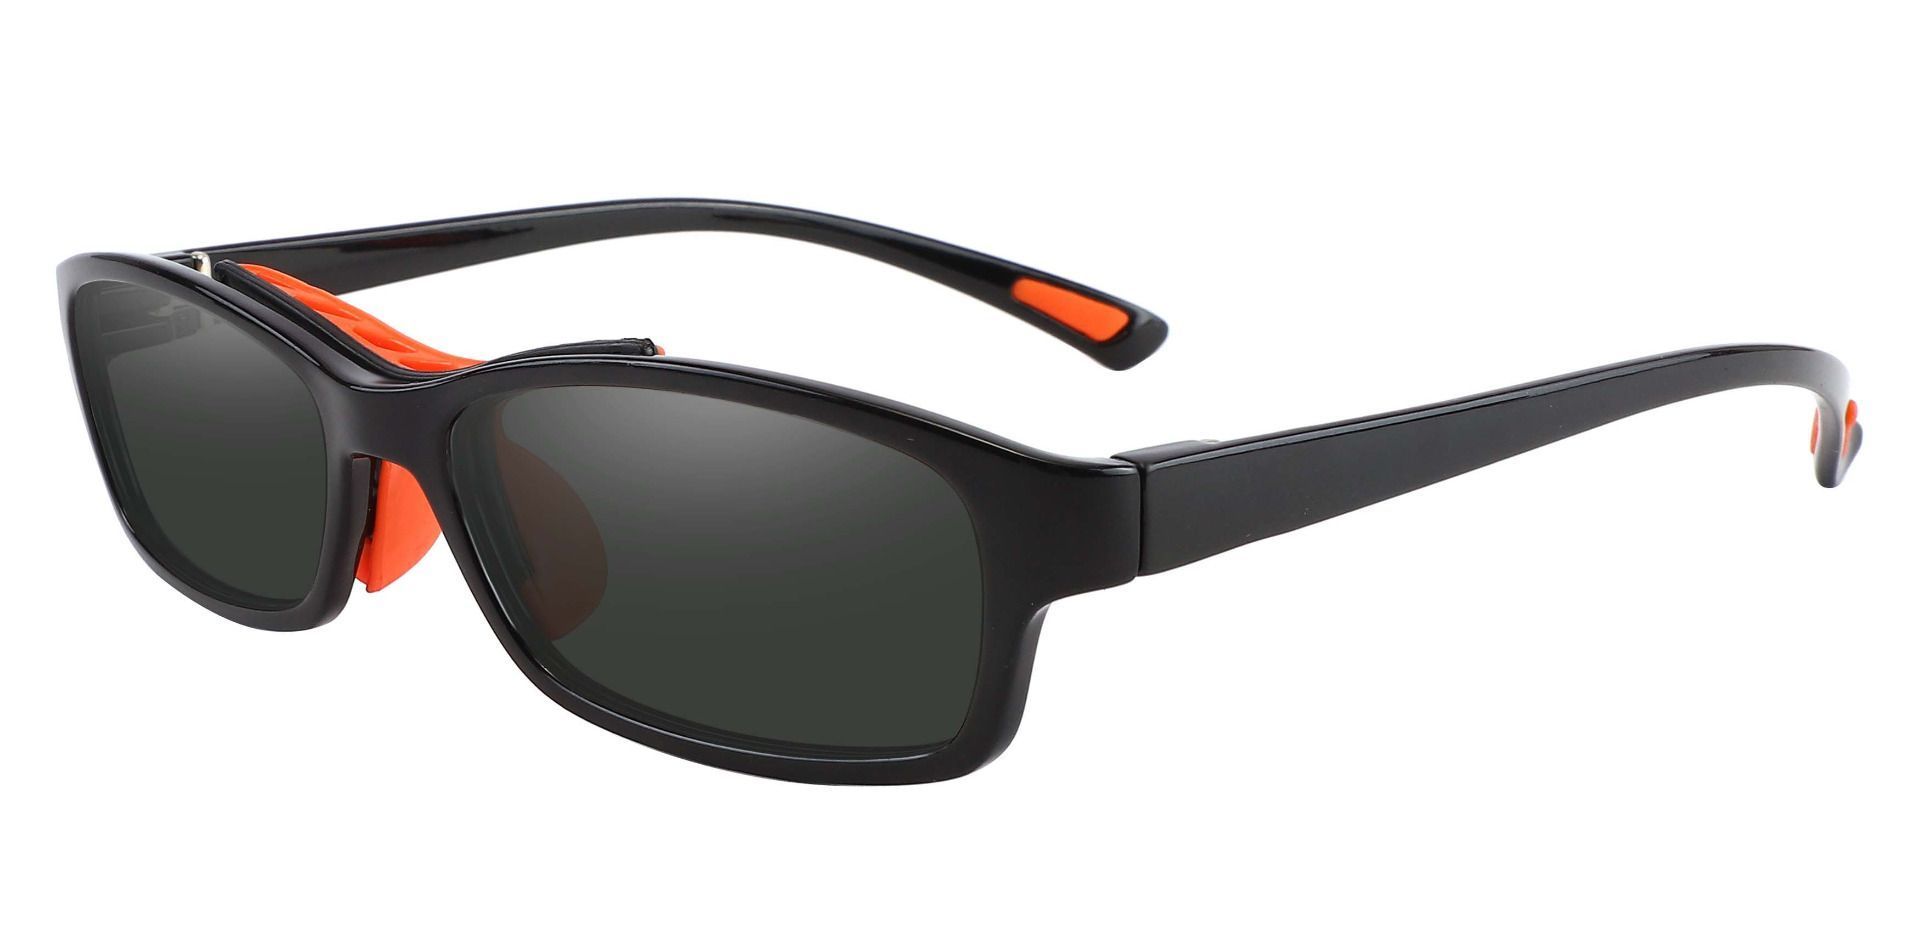 Glynn Rectangle Progressive Sunglasses - Black Frame With Gray Lenses